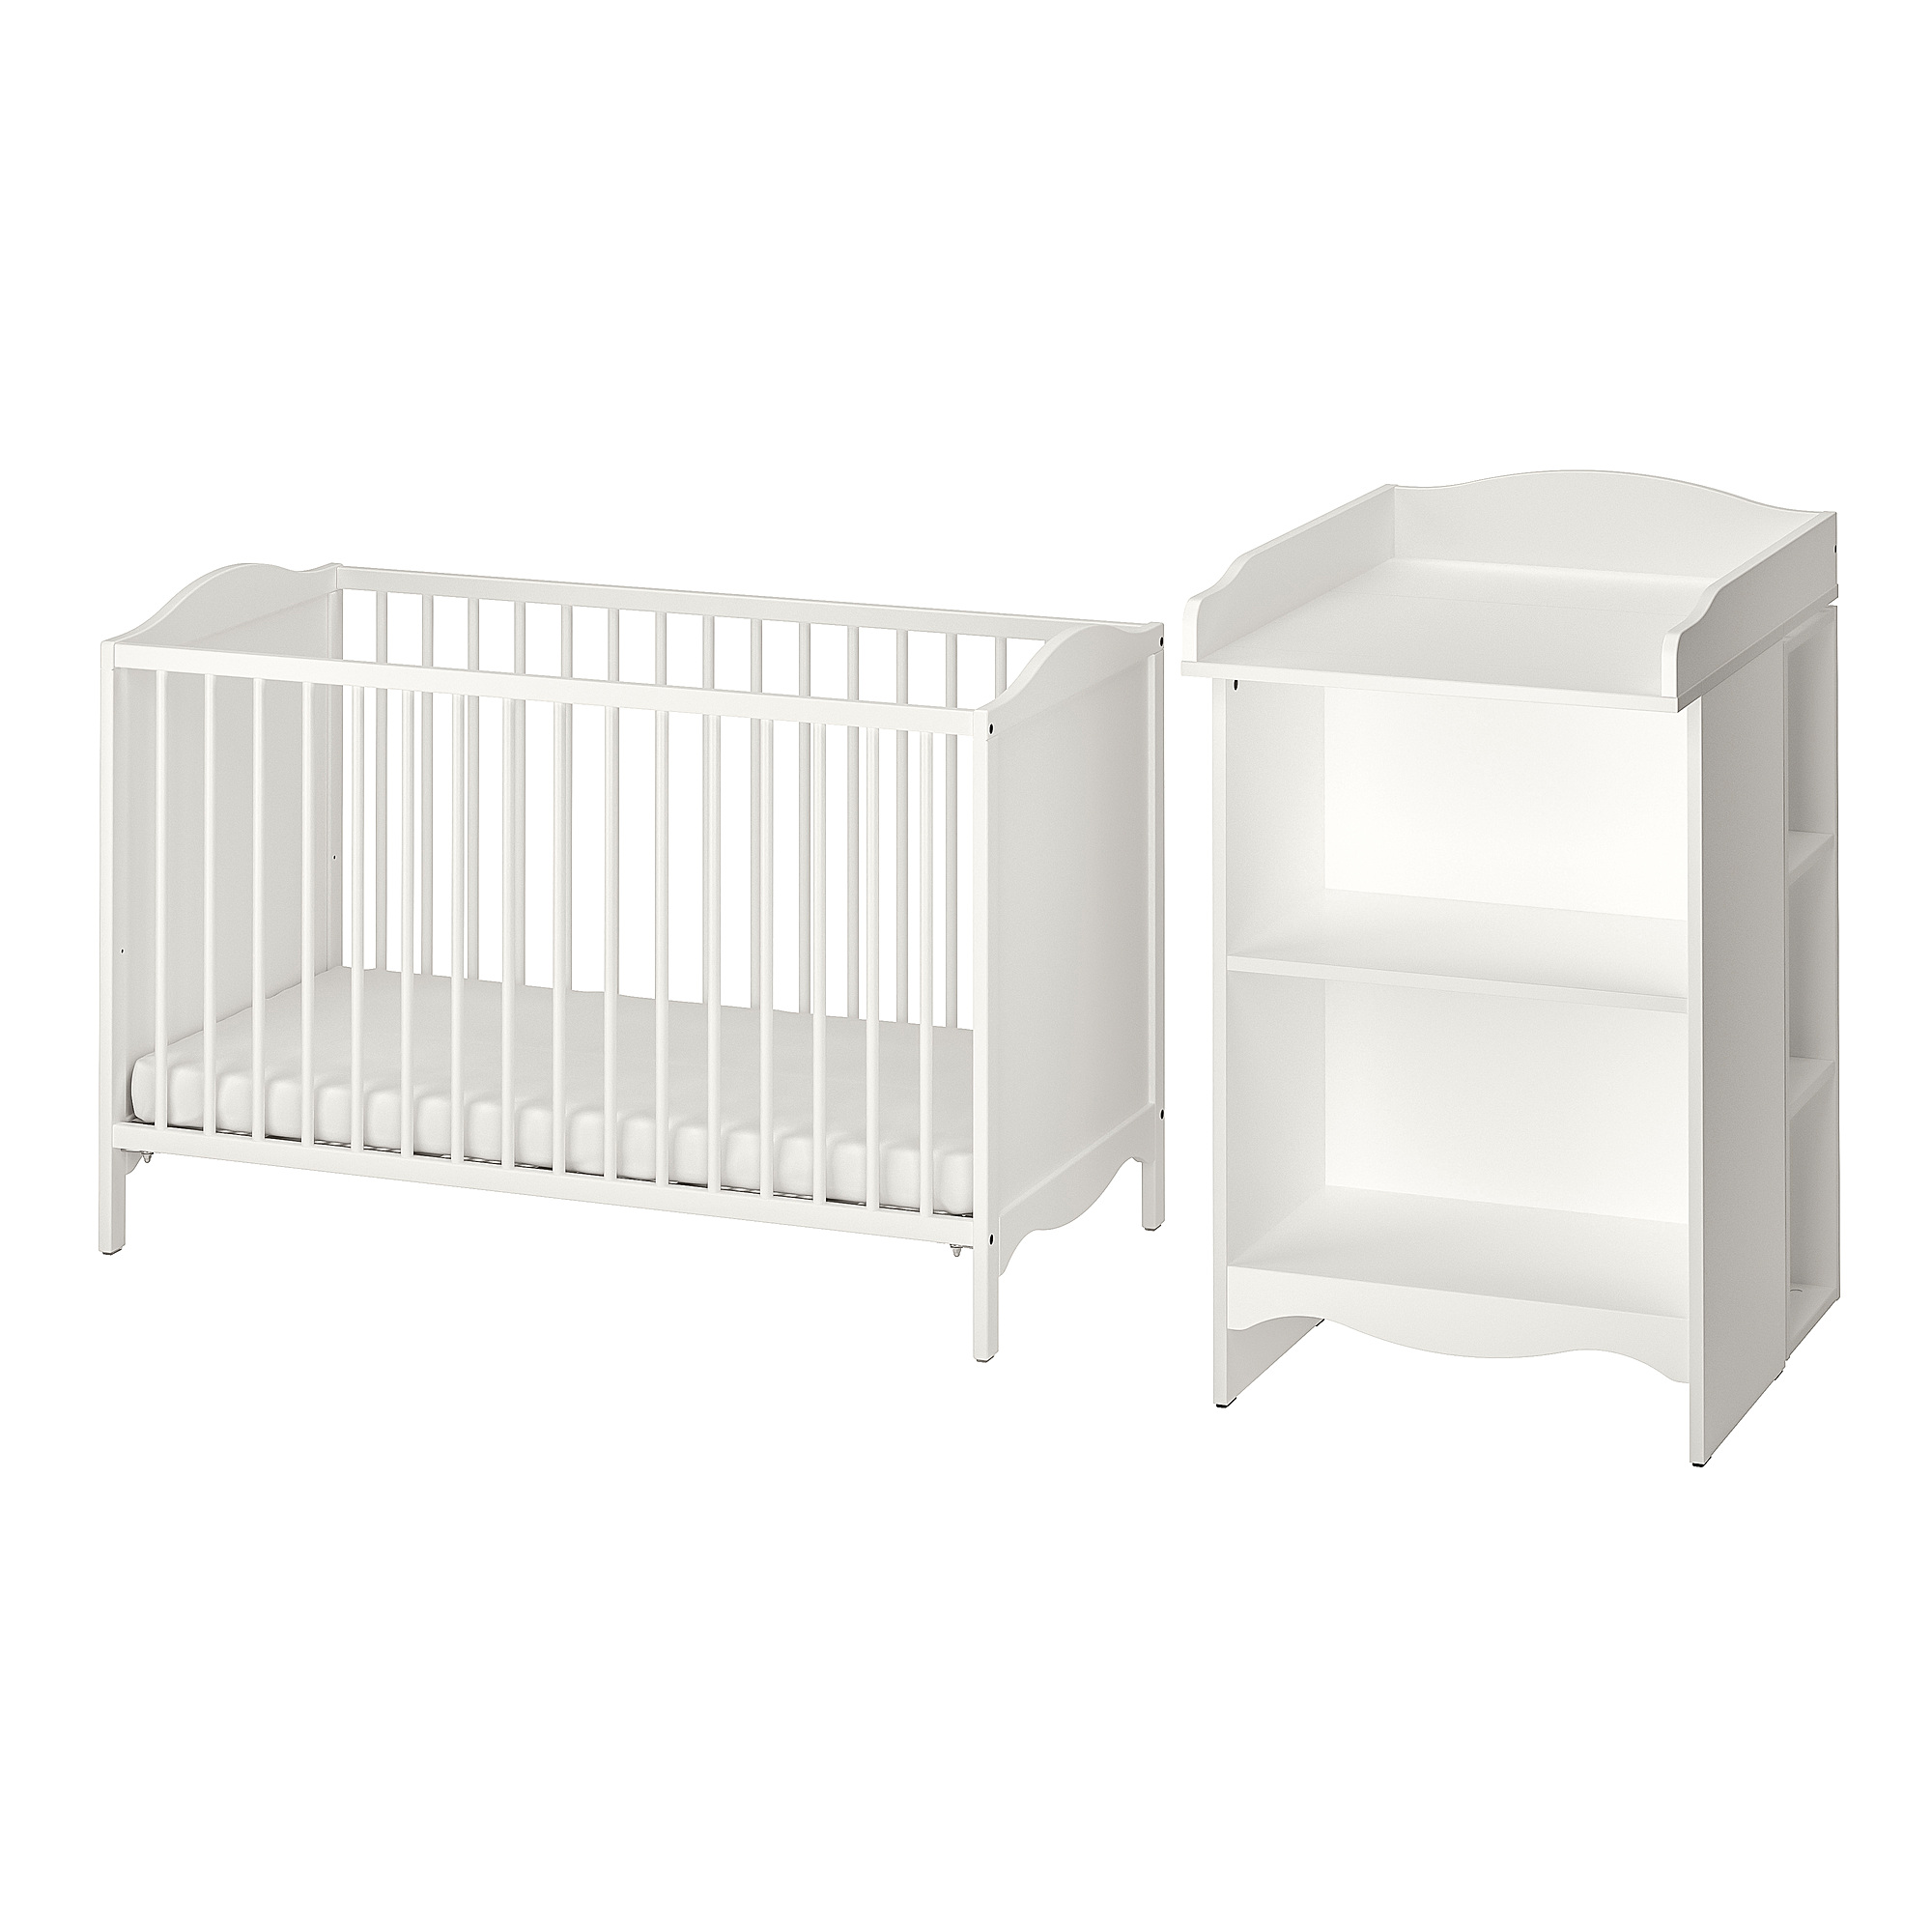 SMÅGÖRA - 2-piece baby furniture set, white, 60x120 cm